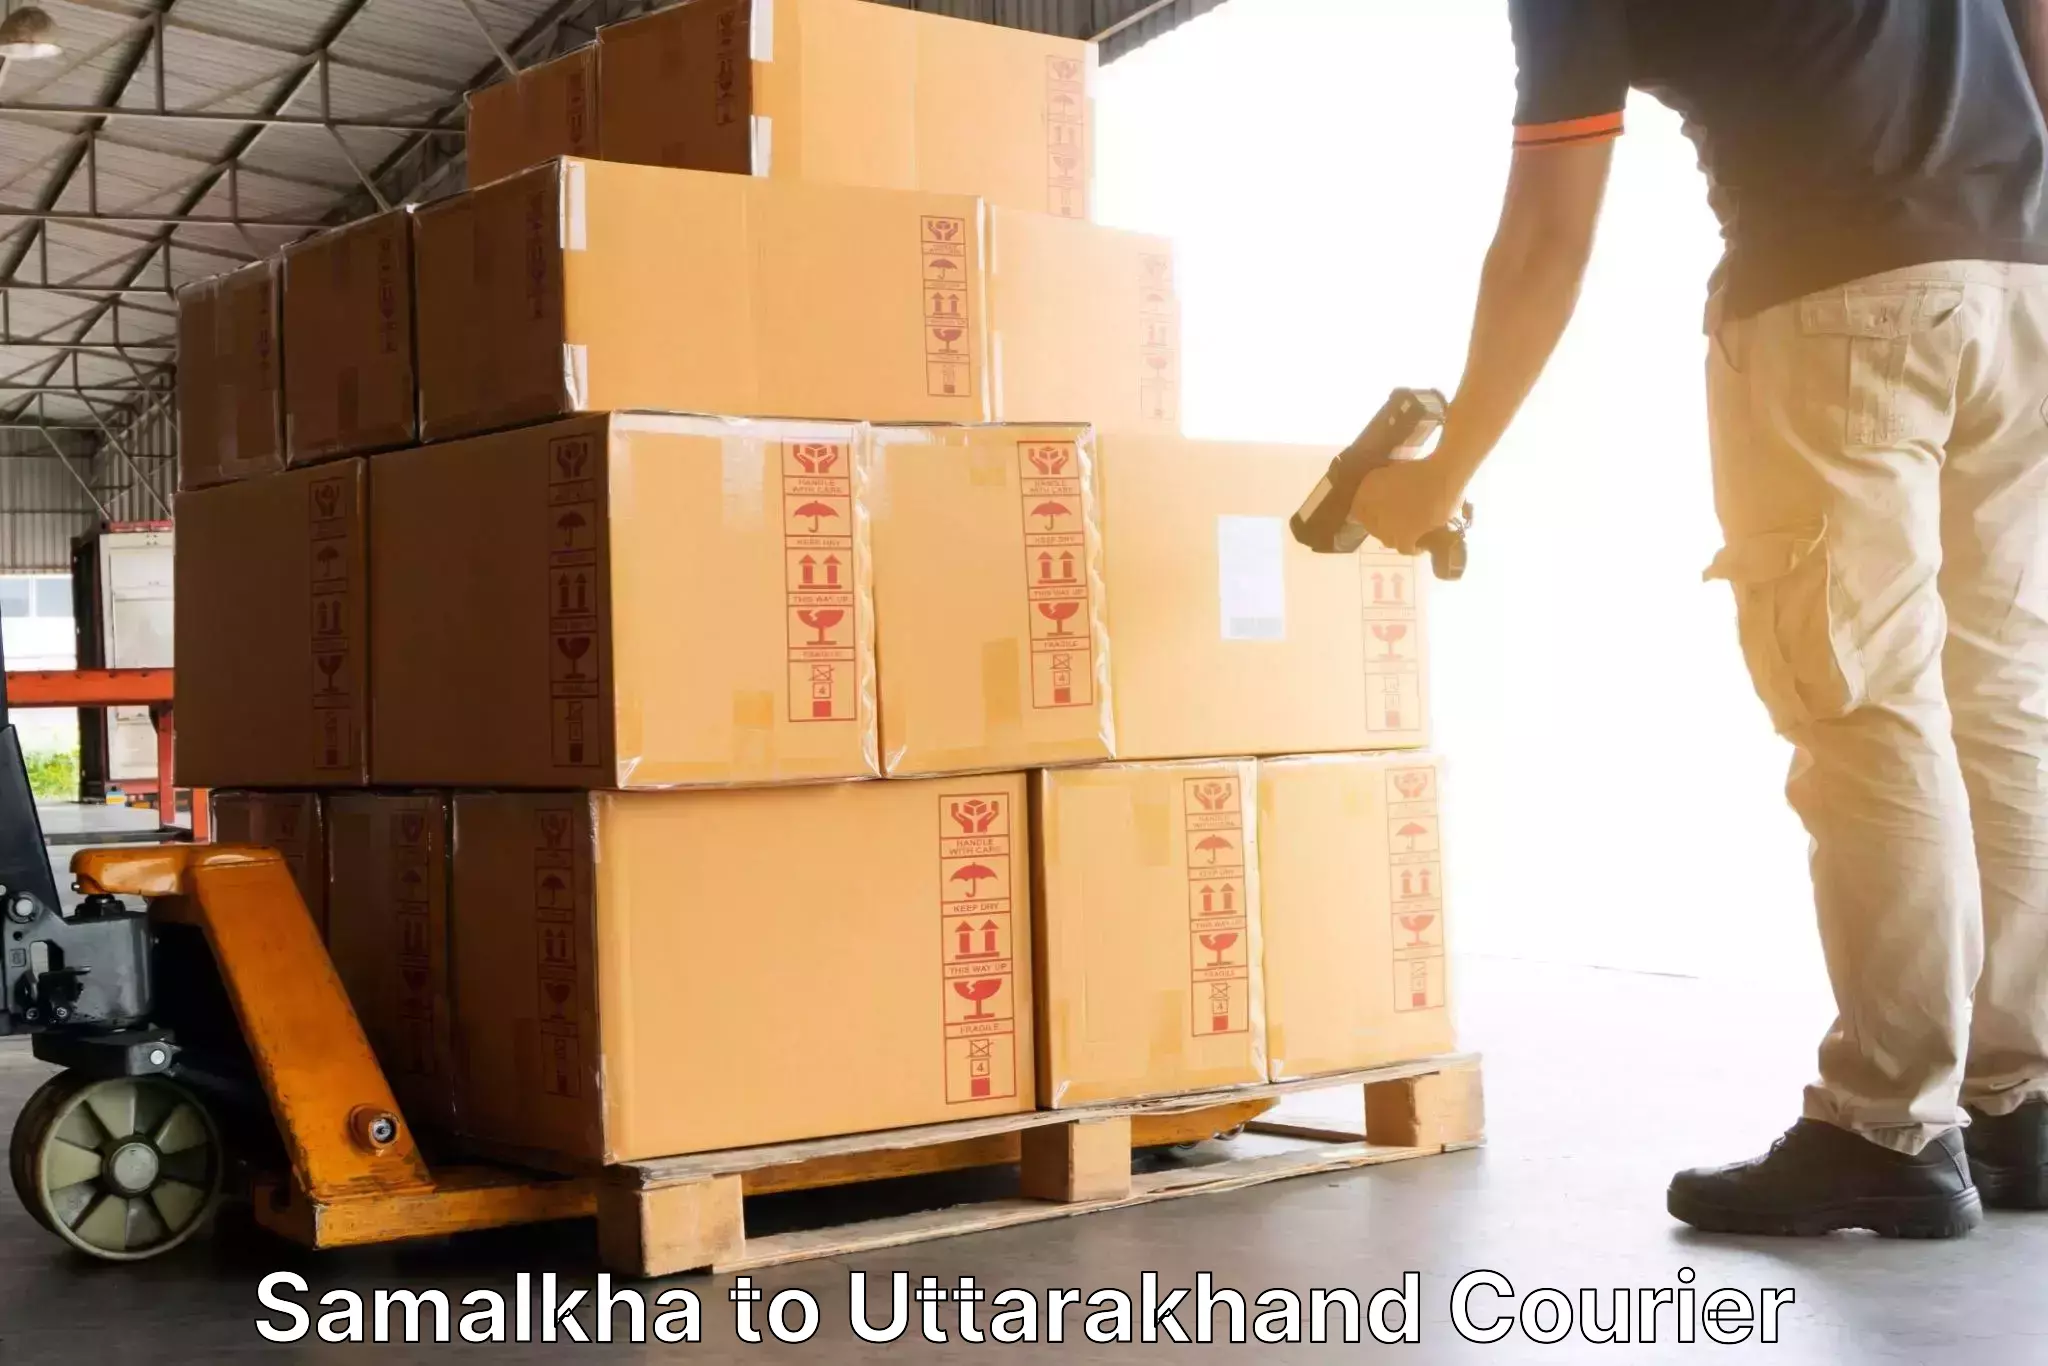 Efficient parcel service Samalkha to Bageshwar